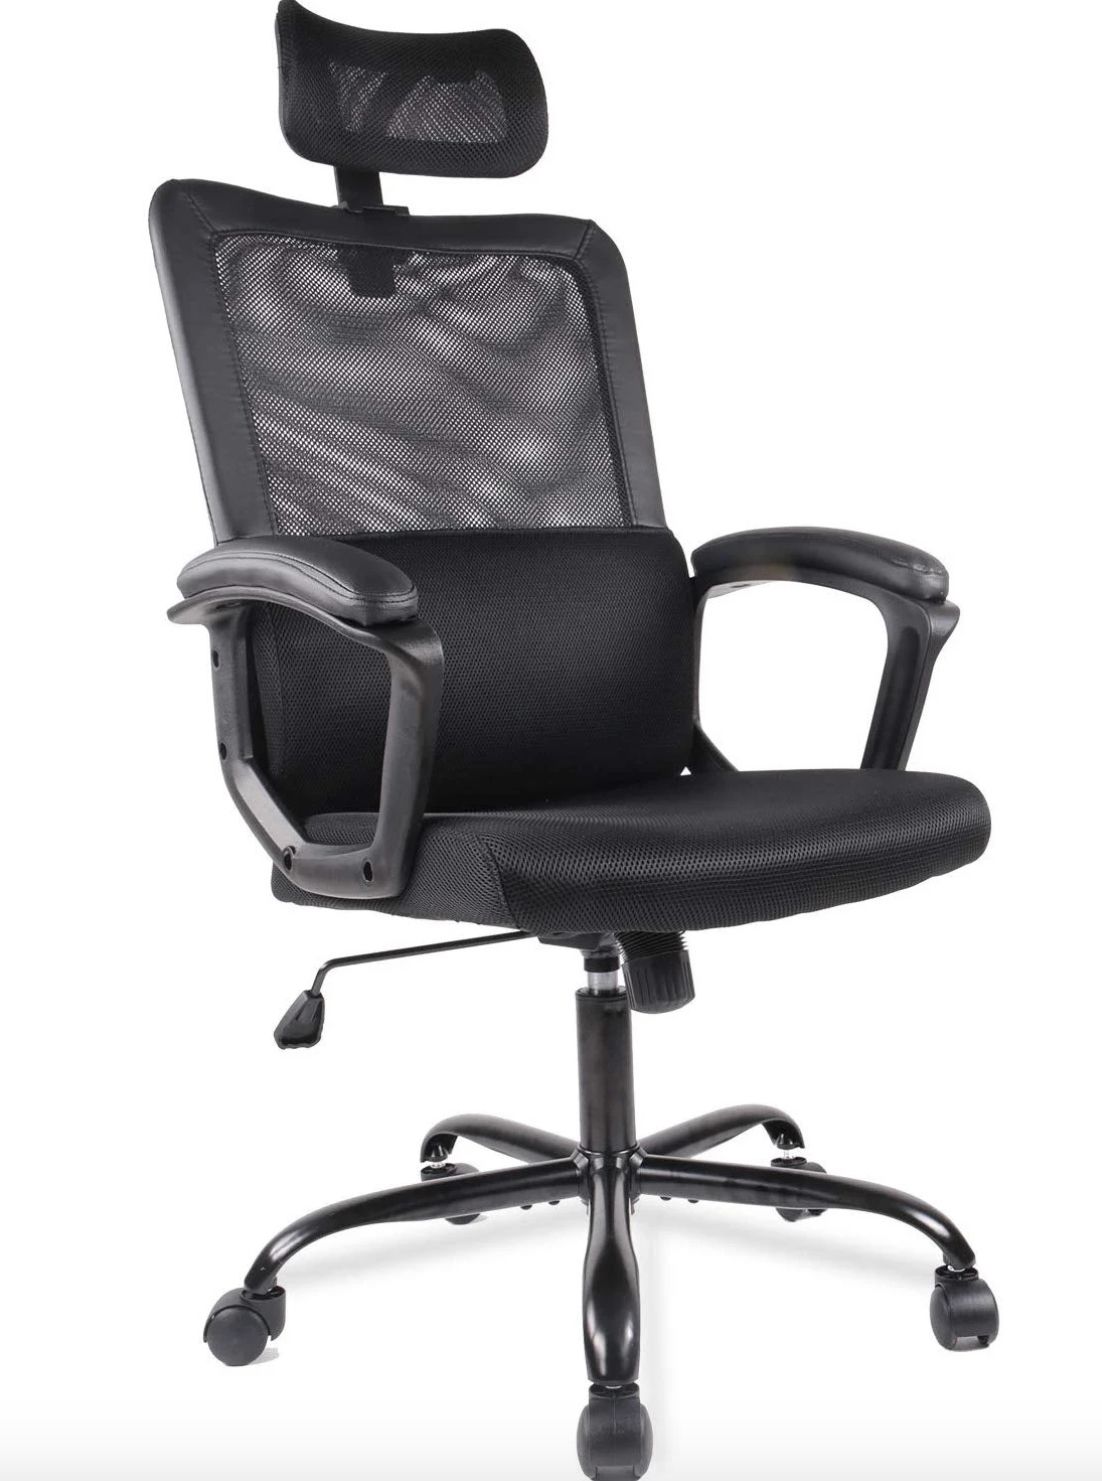 Smugdesk Ergonomic Black Mesh High Back Office Chair